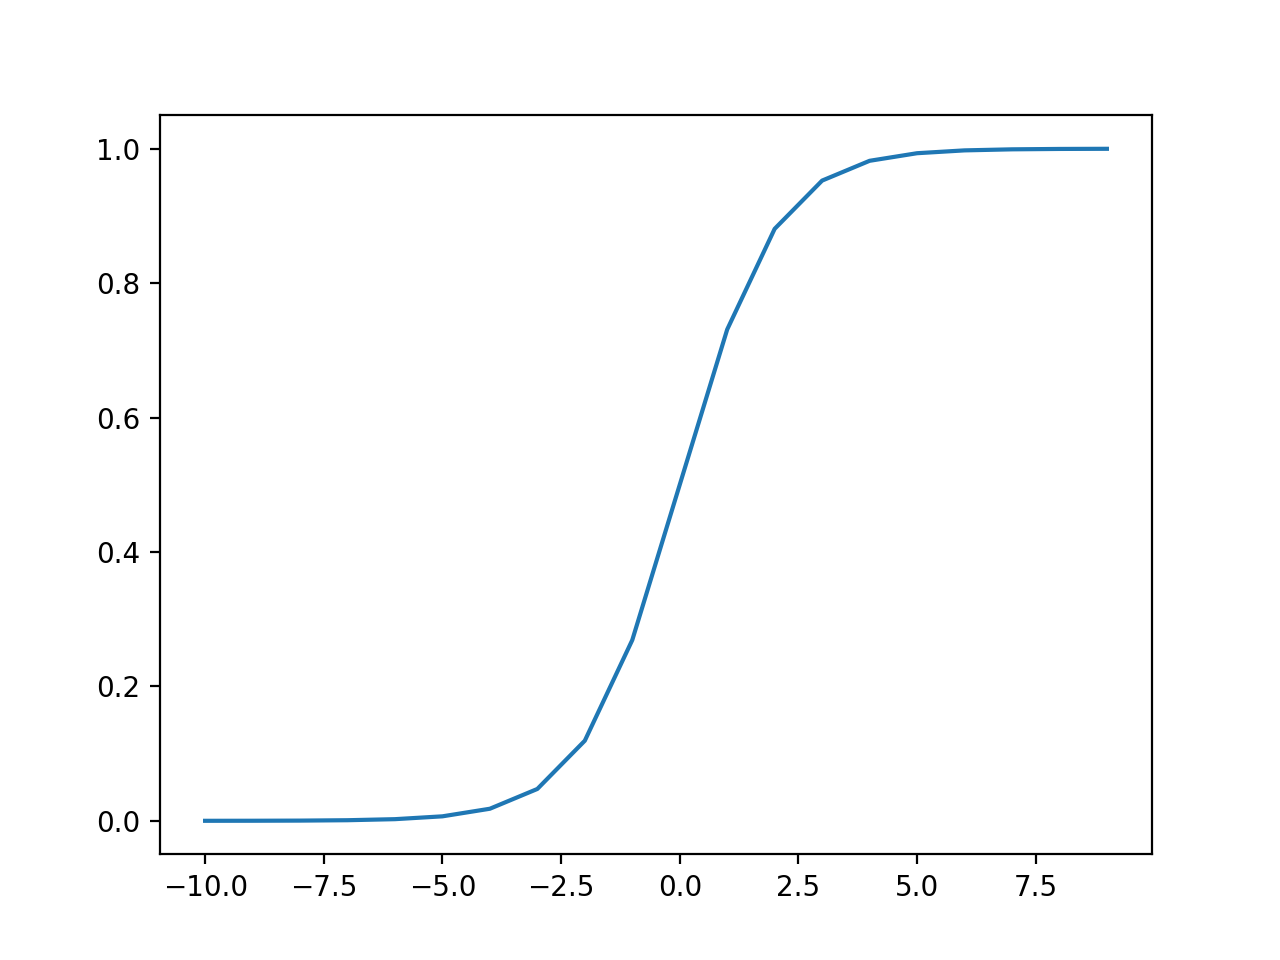 Gráfico de entradas frente a salidas para la función de activación sigmoidea.